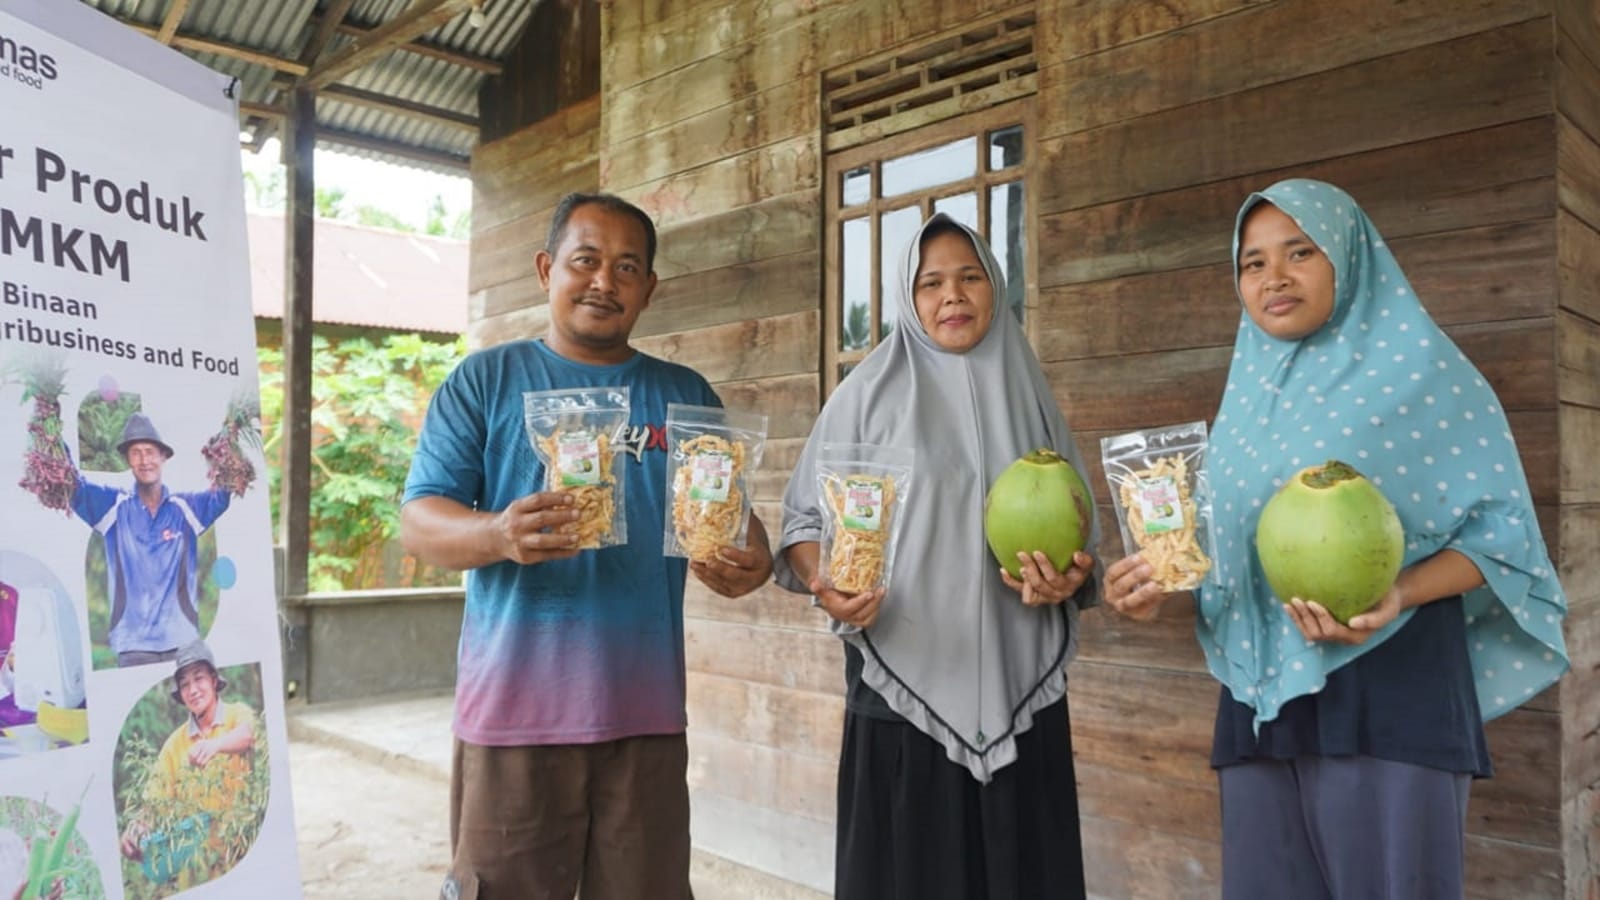 Cerita Sukses Kelompok Binaan Sinar Mas Agribusiness and Food